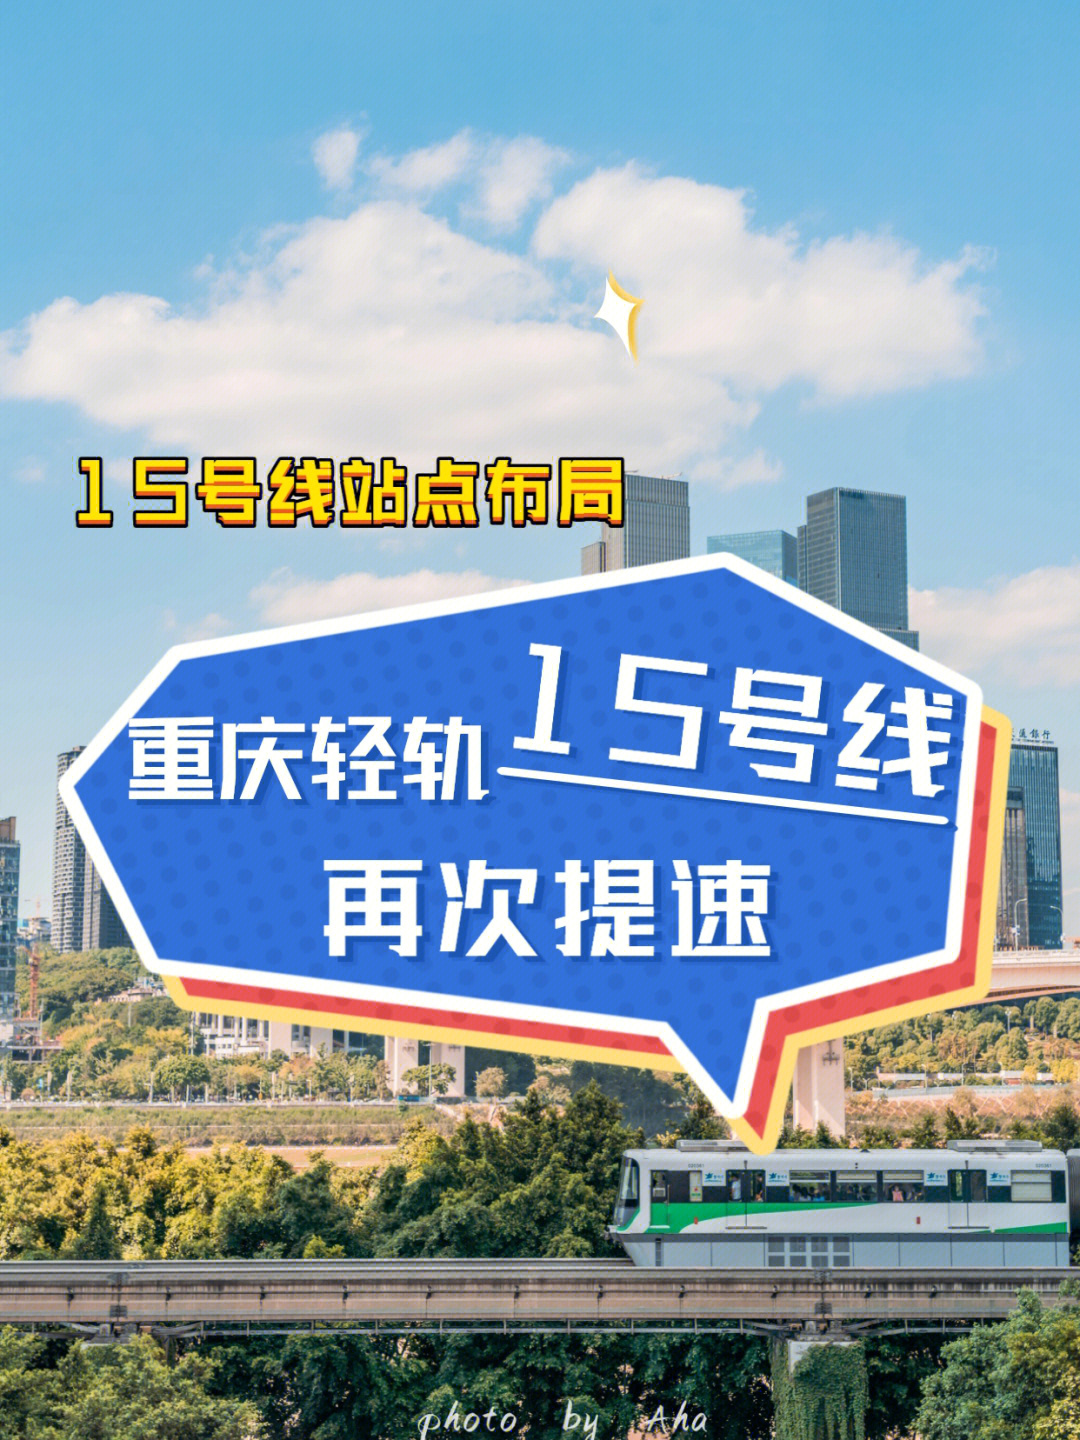 重庆15号线路线图图片